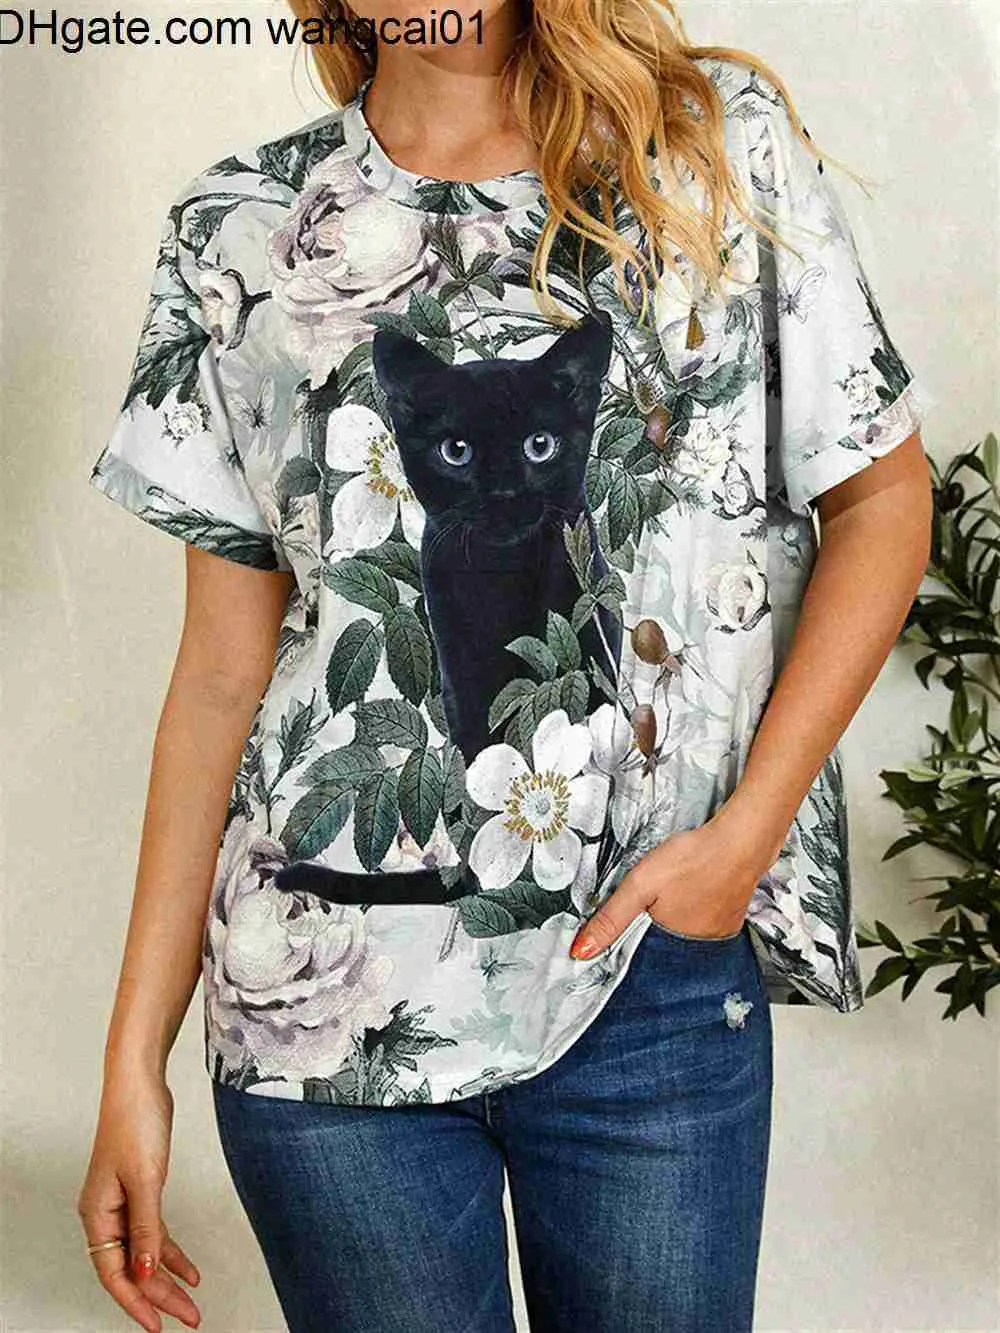 Men's T-Shirts Summer T Shirts for Women 3d Cute Cat Fashion Print T-shirt Women's Clothing Short Seves Harajuku Animals Girls Kawaii Top Tee 410&3